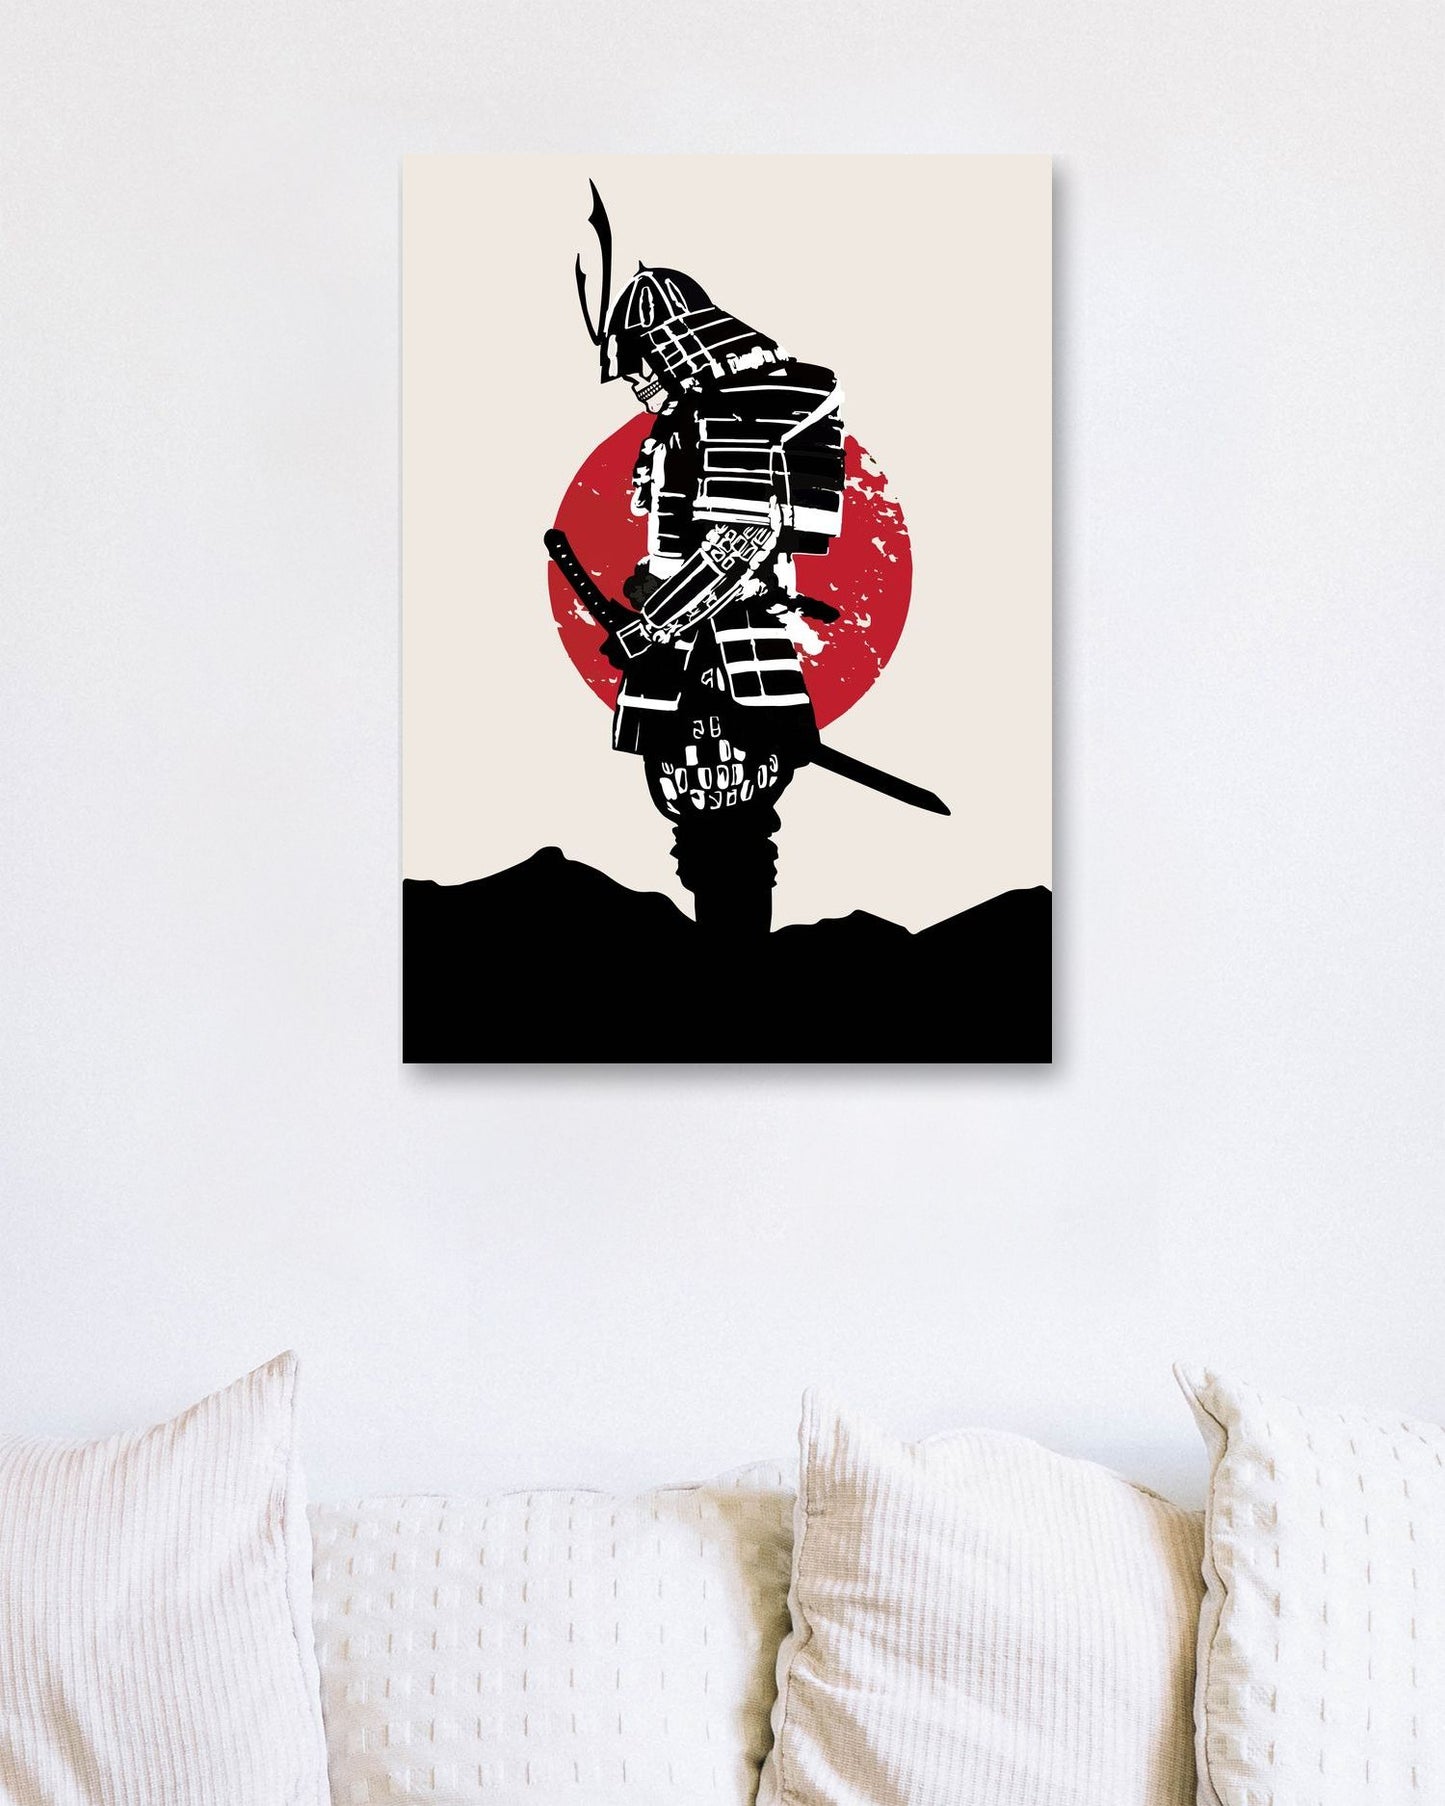 Samurai Japan2 - @AzlanXavier